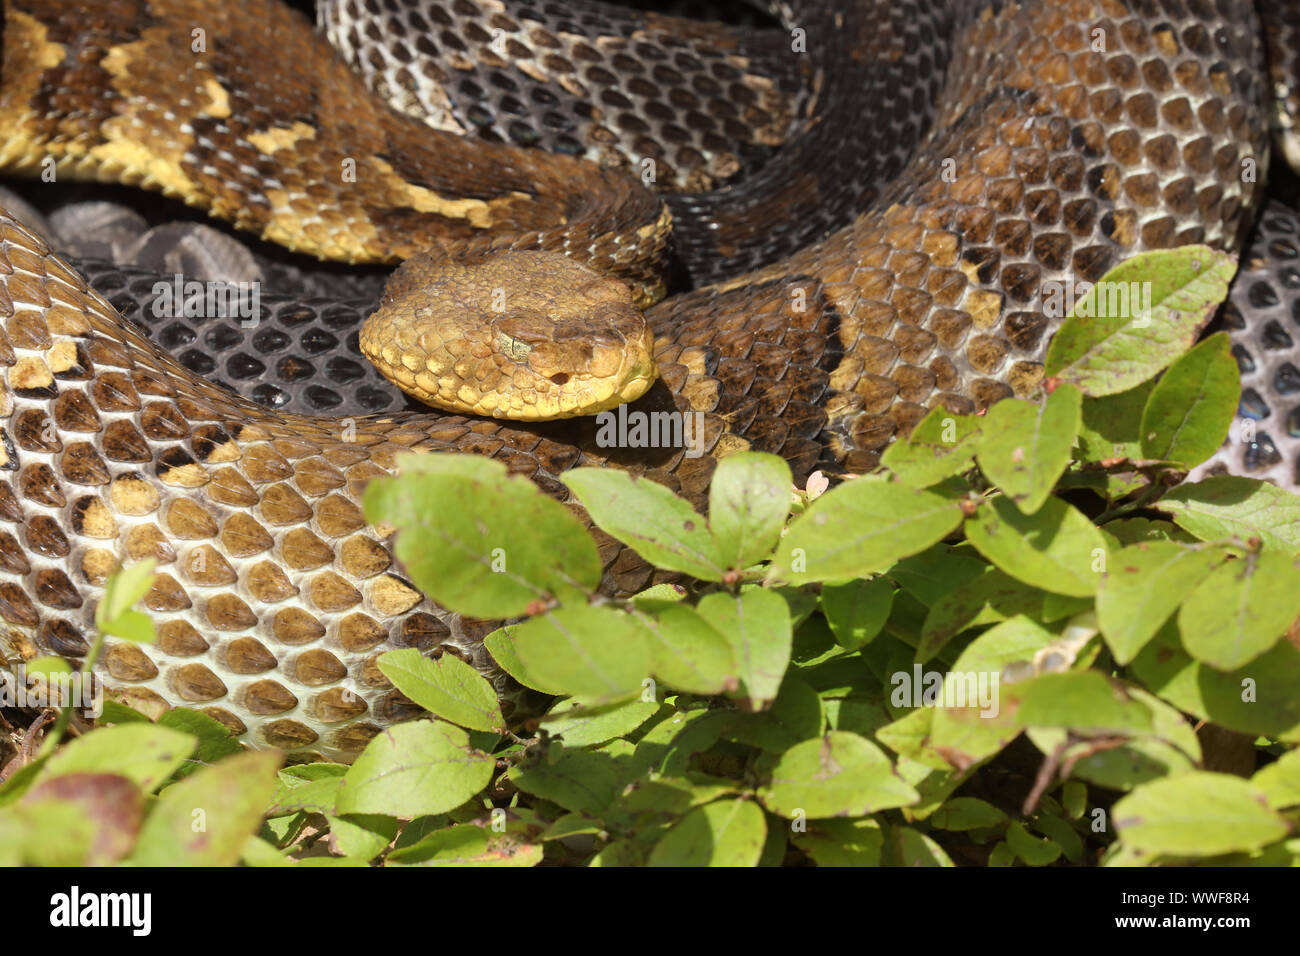 Madera, serpientes de cascabel (Crotalus horridus), hembra adulta, Pennsylvania, hembras grávidas la serpiente de cascabel del bosque se reúnan en sitios de maternidad y bask y Foto de stock